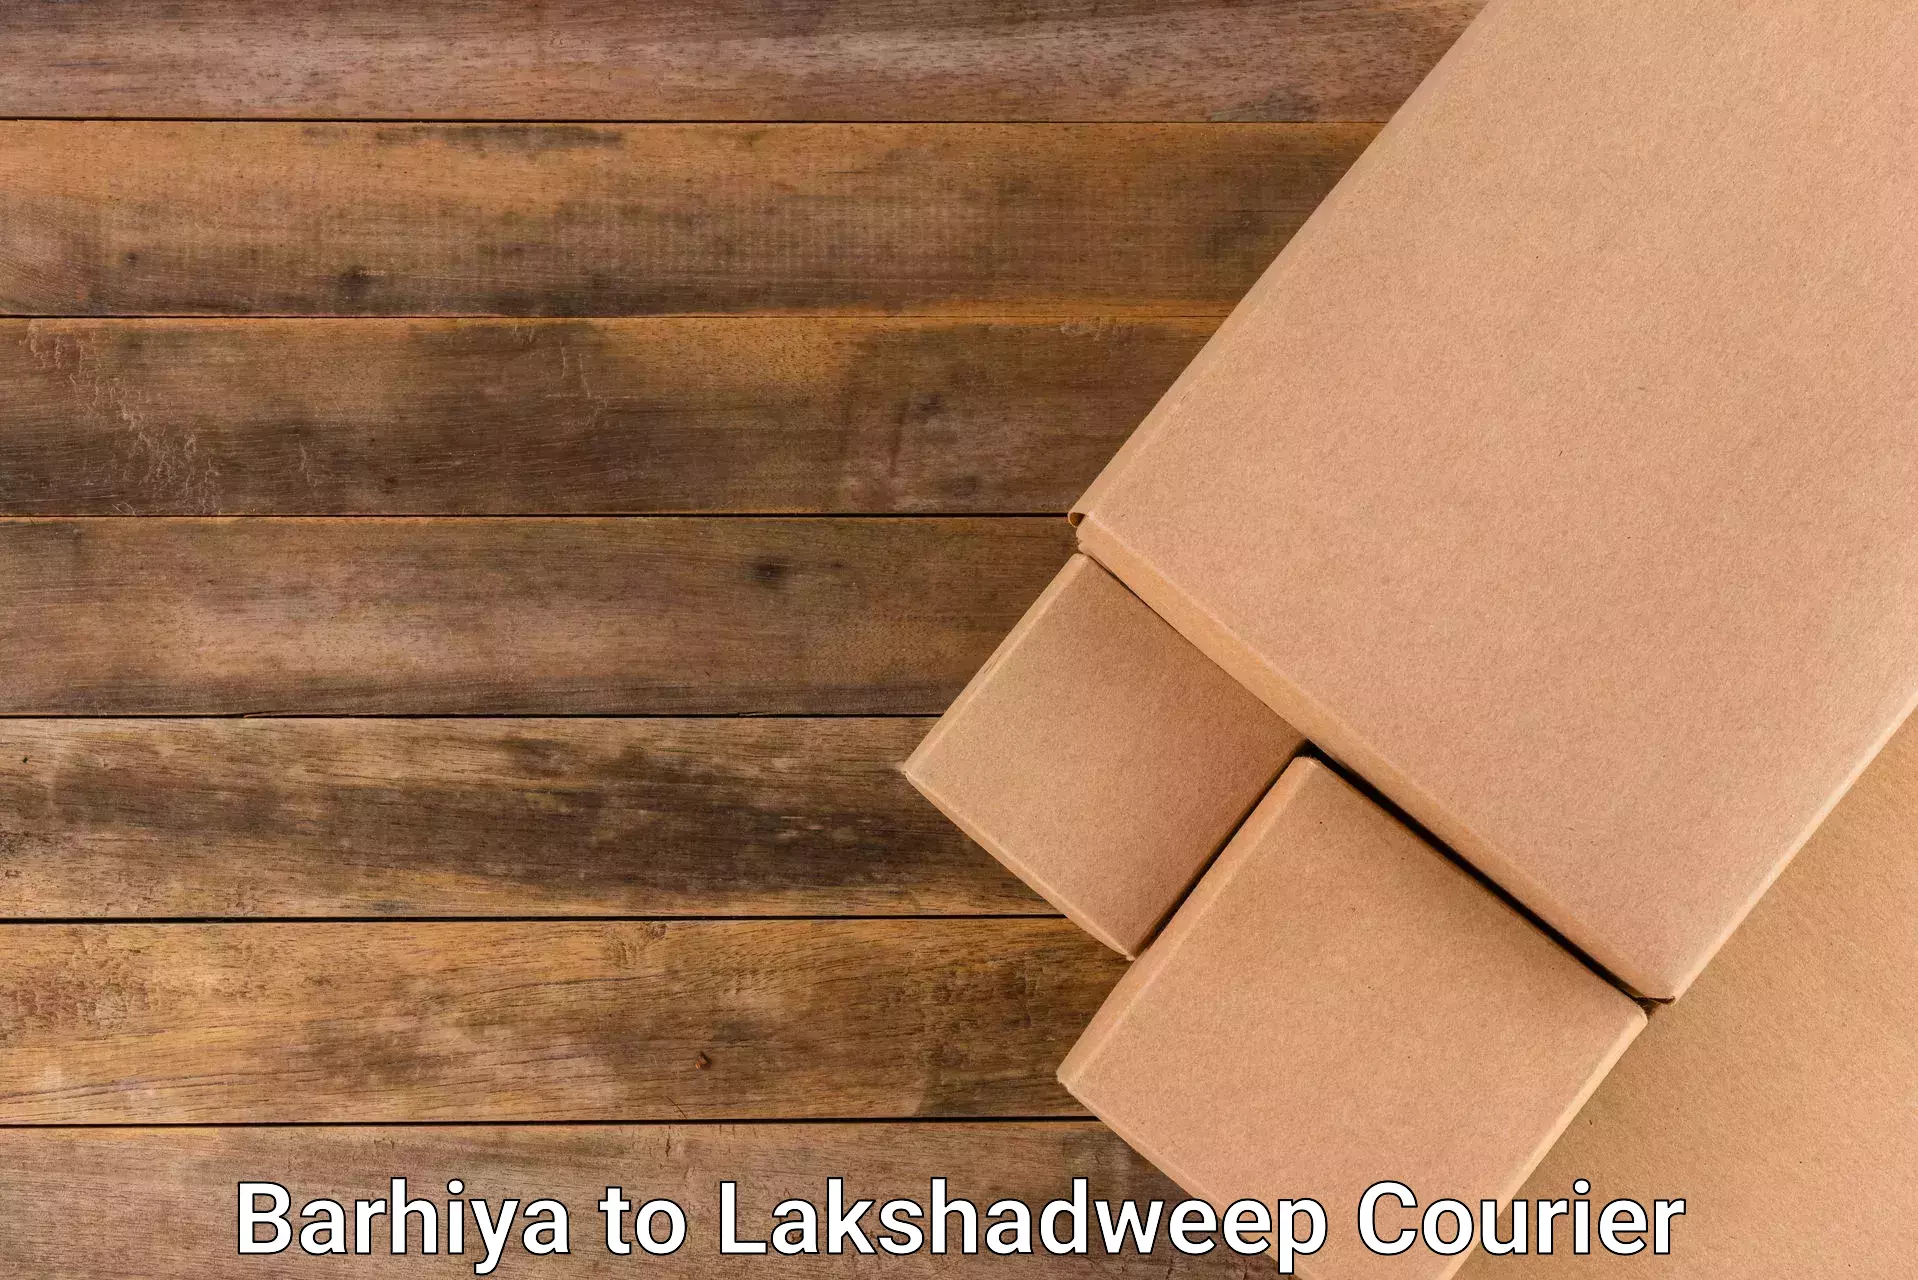 Express courier facilities Barhiya to Lakshadweep